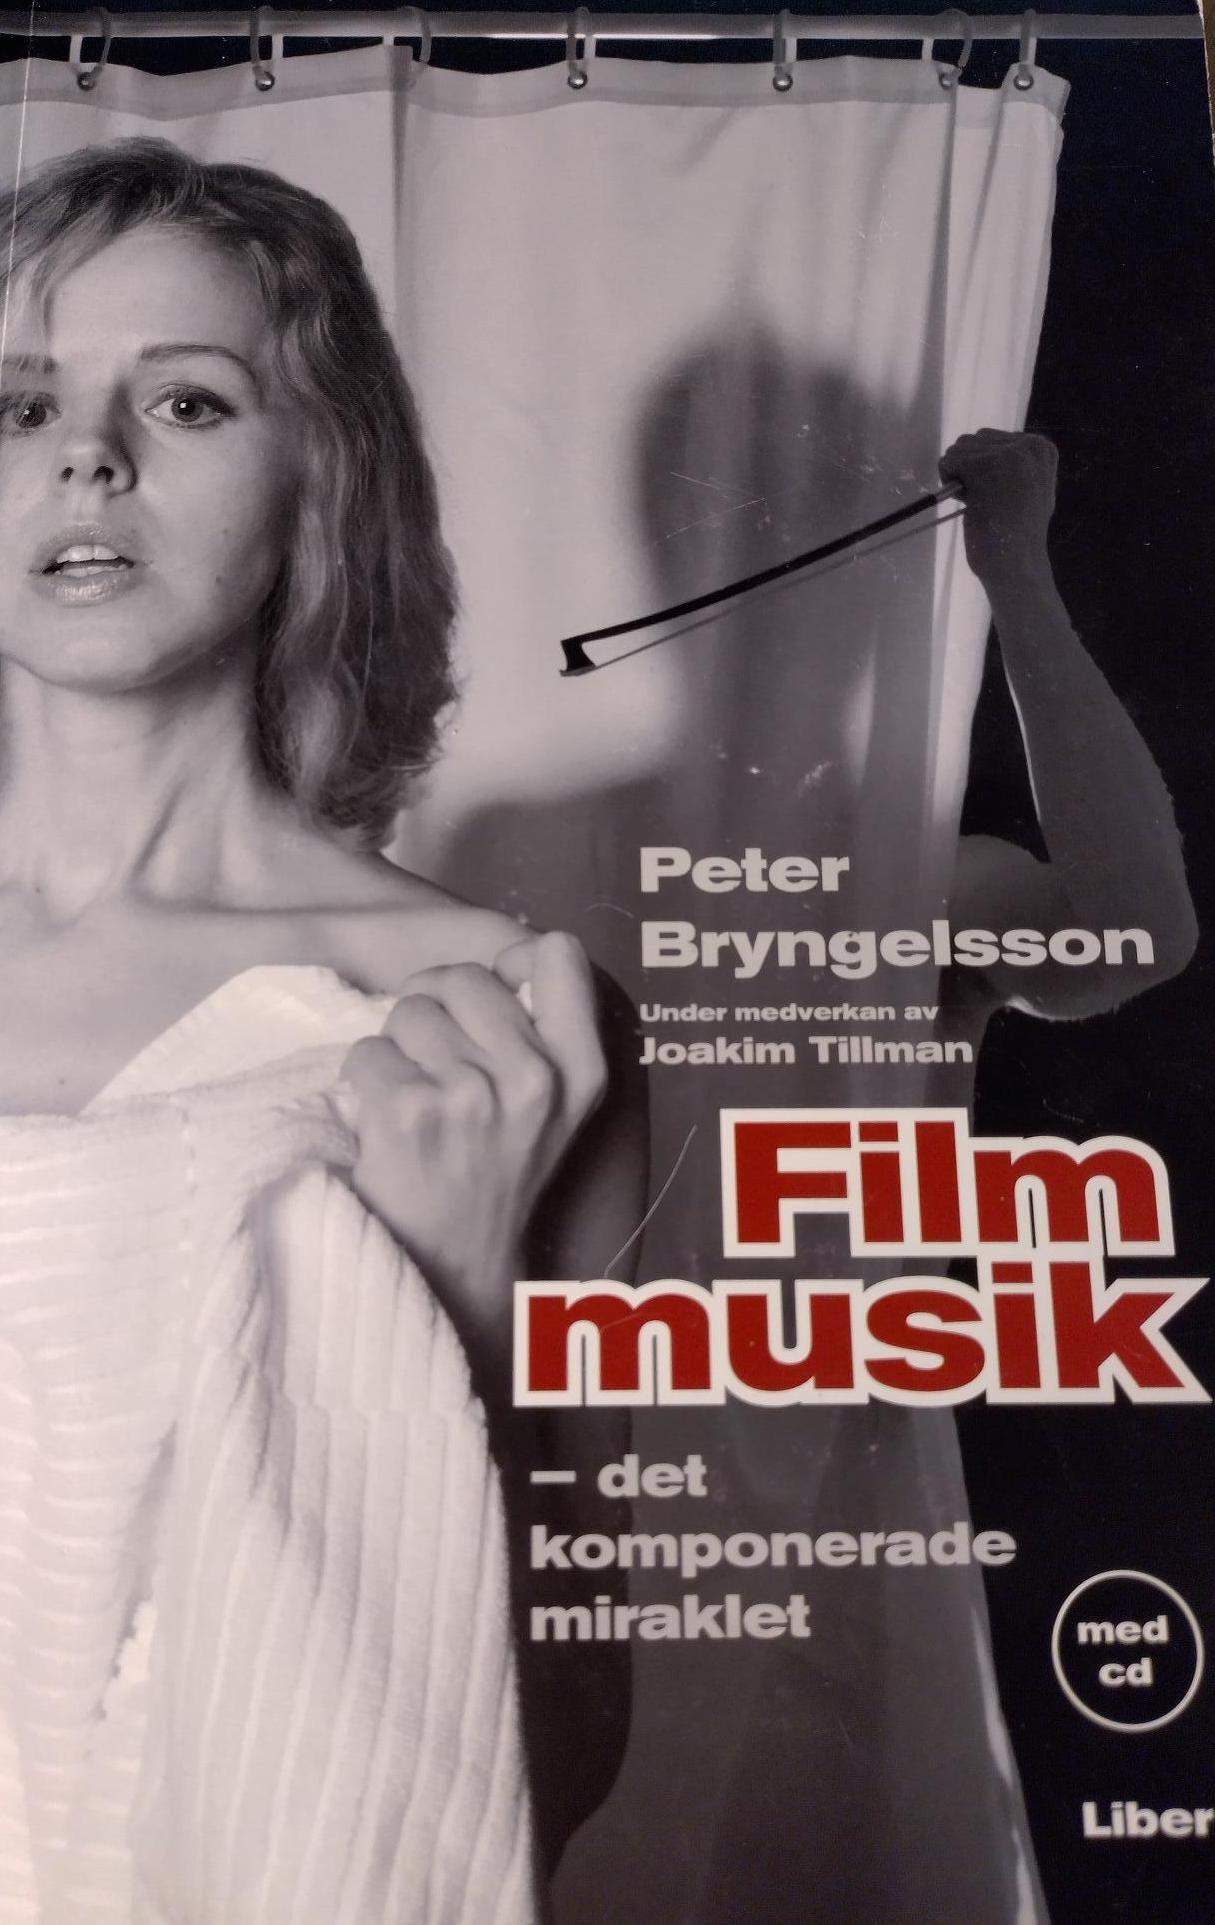 Filmmusik - det komponerade miraklet; Peter Bryngelsson, Joakim Tillman; 2006